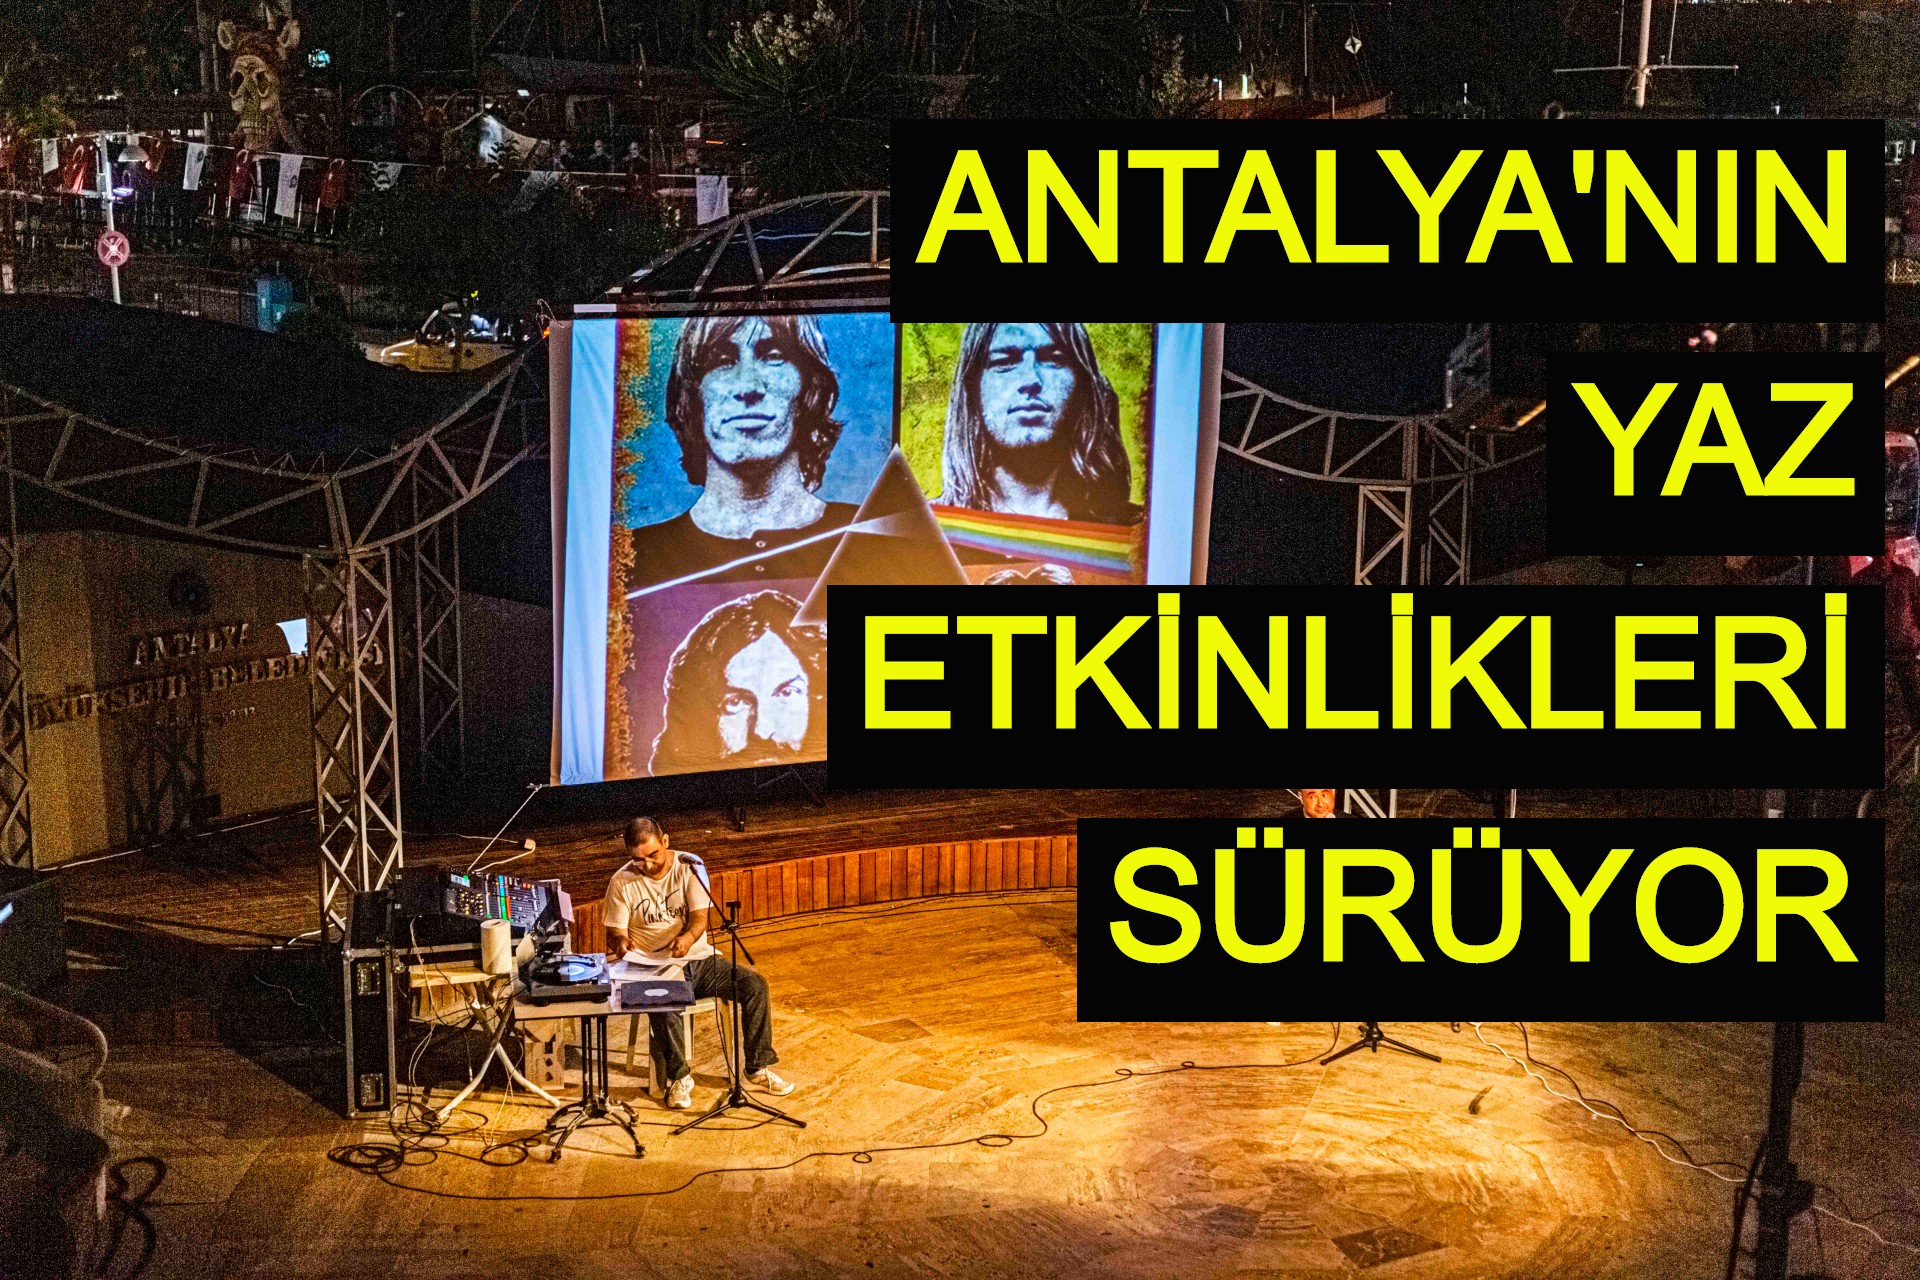 Antalya'nın yaz etkinlikleri sürüyor